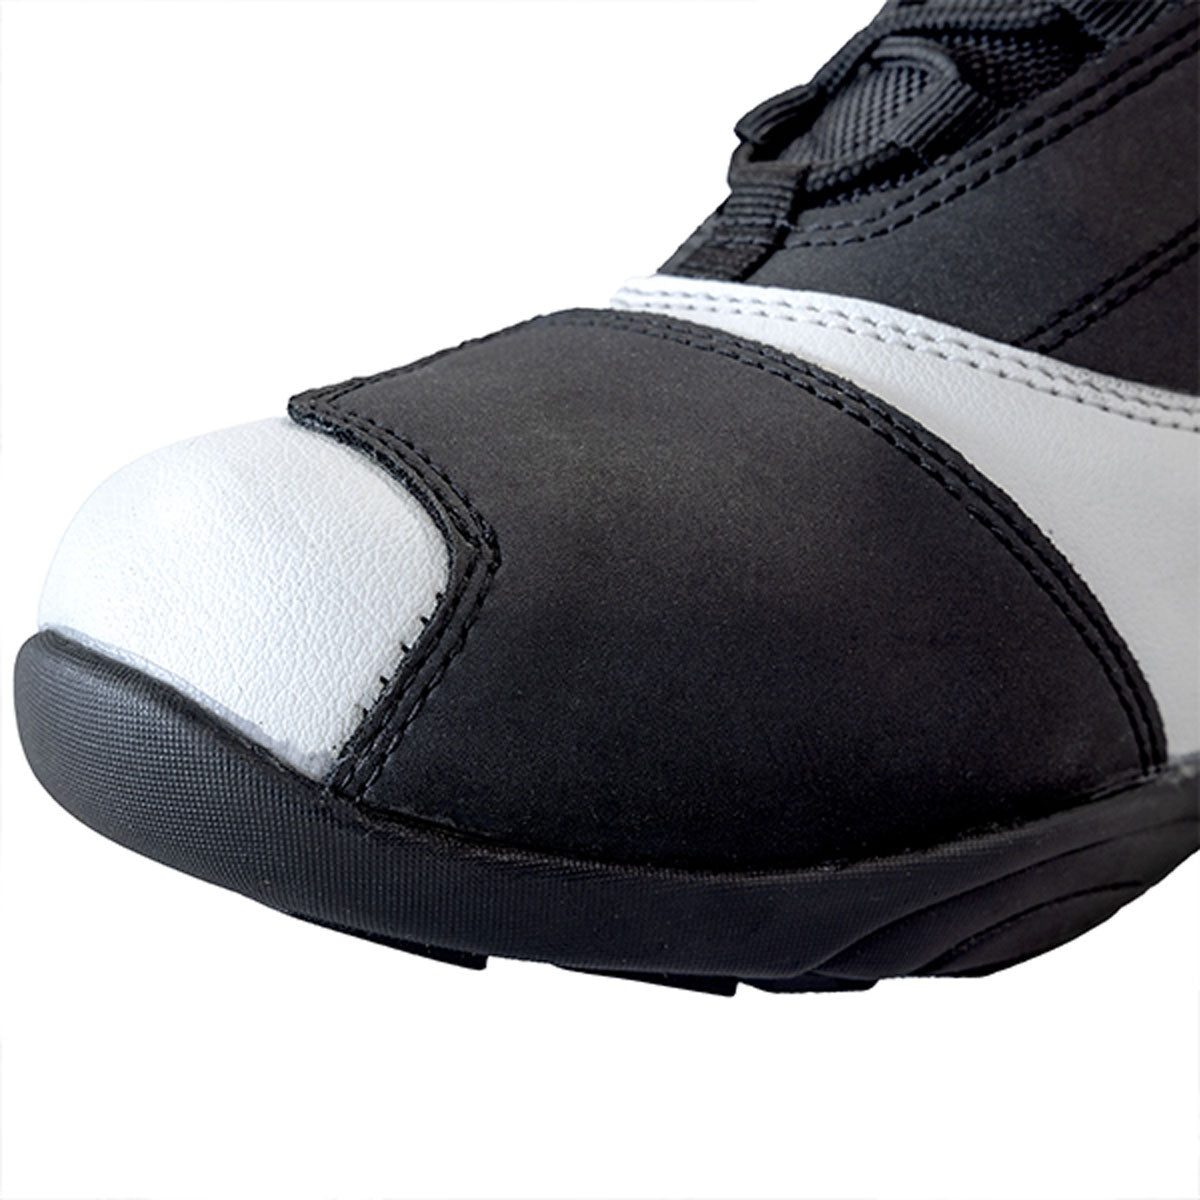 Richa Slick Motorbike Shoes - Black White toe slider